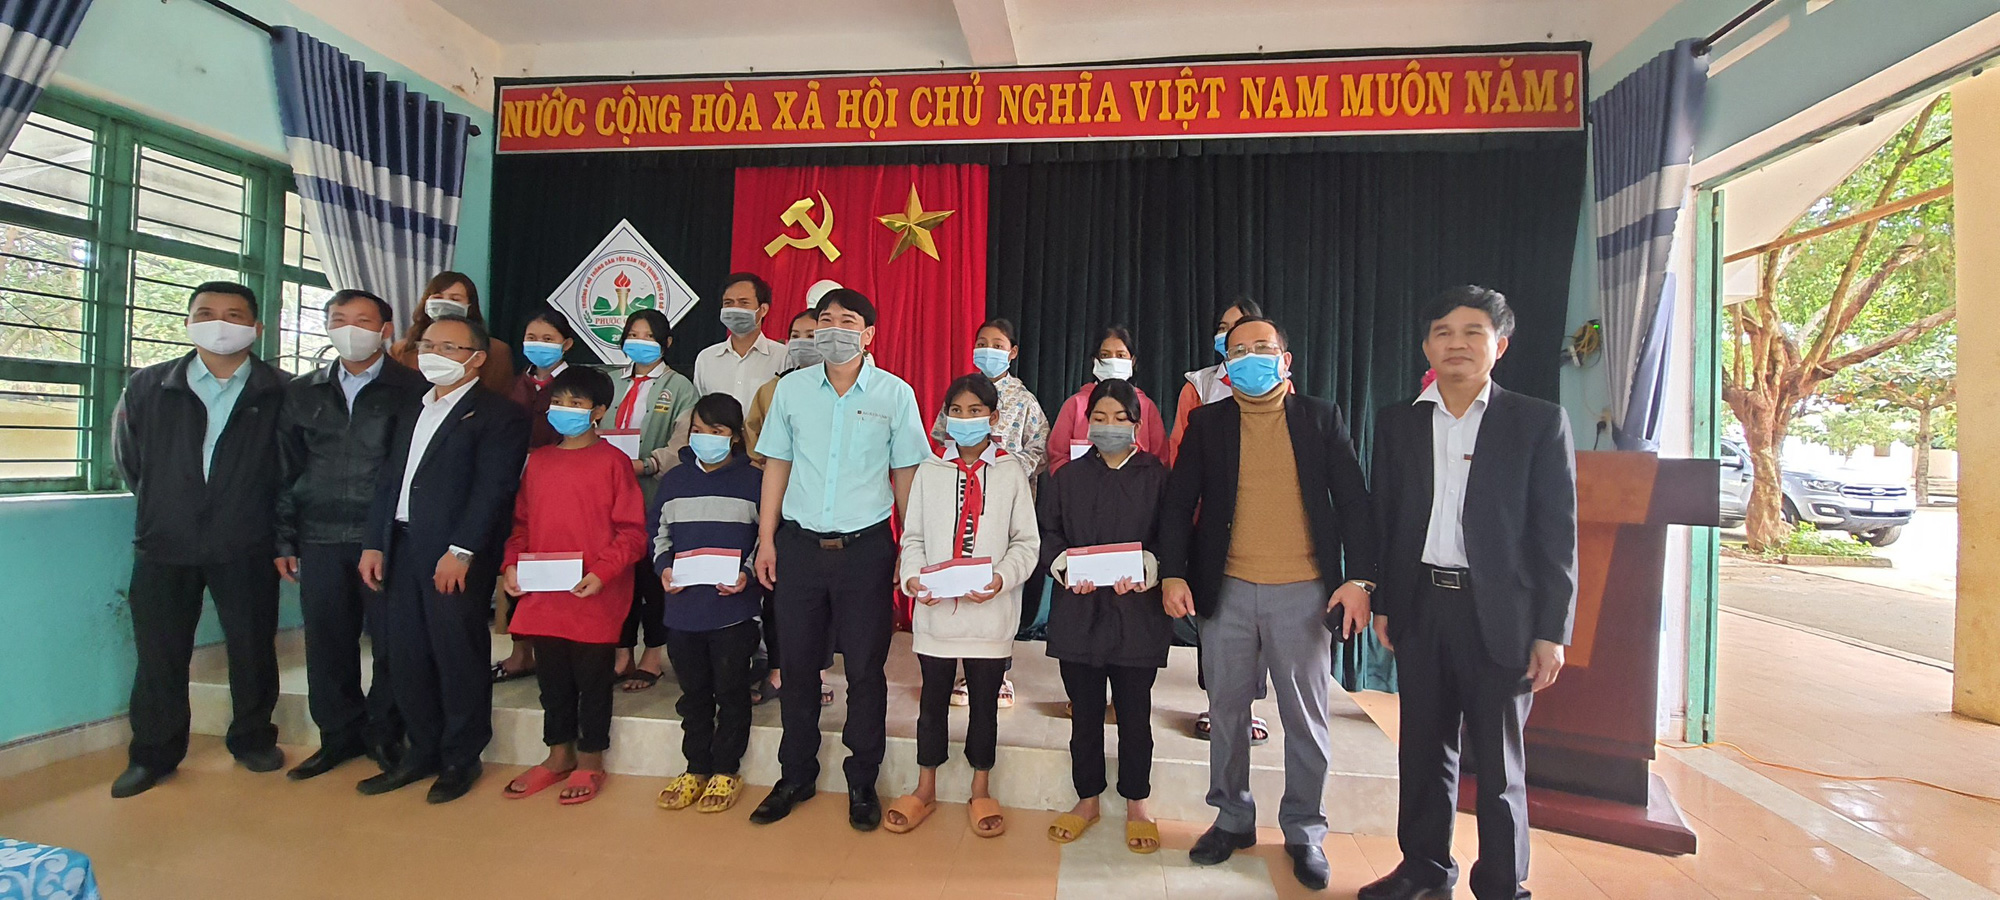 Quảng Nam: Agribank trao quà cho học sinh có hoàn cảnh khó khăn ảnh hưởng Covid-19 - Ảnh 3.